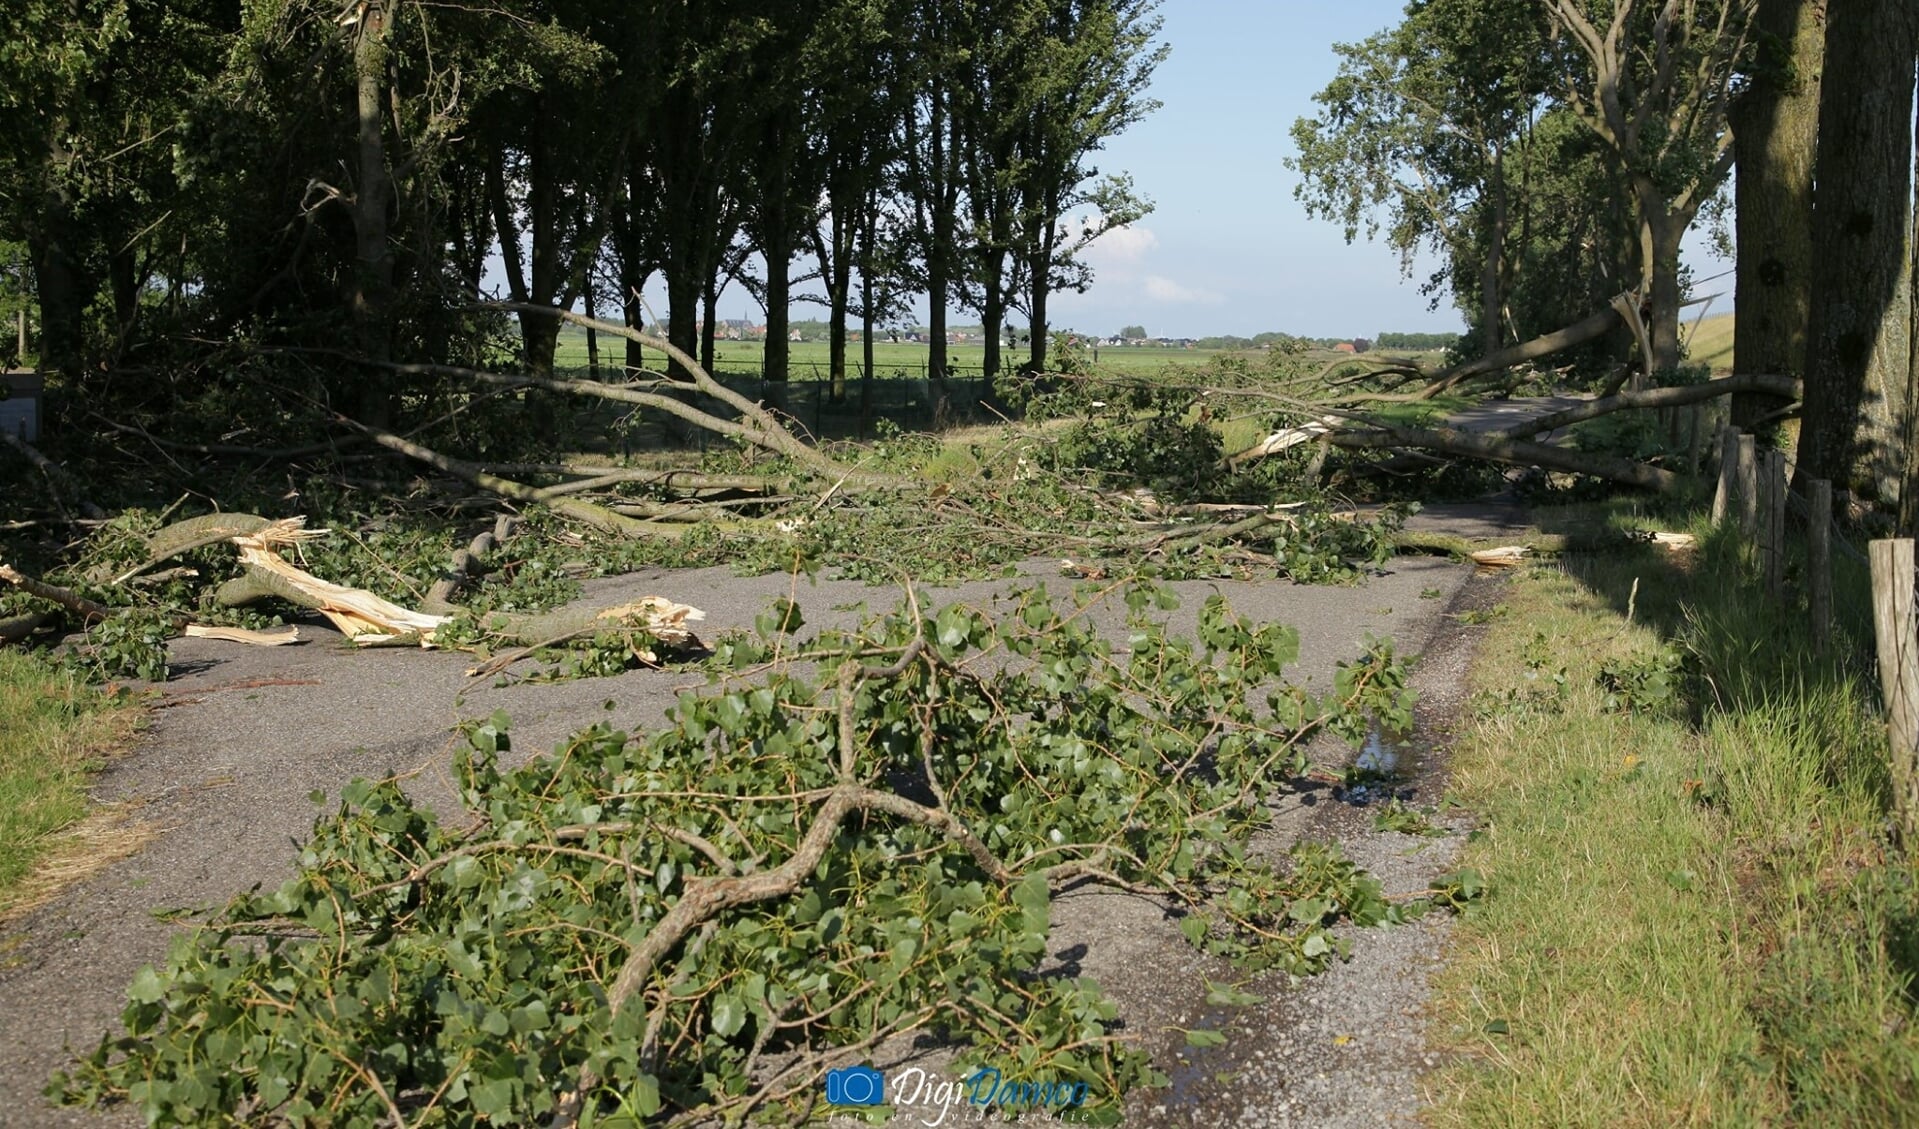 Afgewaaide takken versperren de weg in de omgeving van Oude-Tonge. Foto: Wilko van Dam